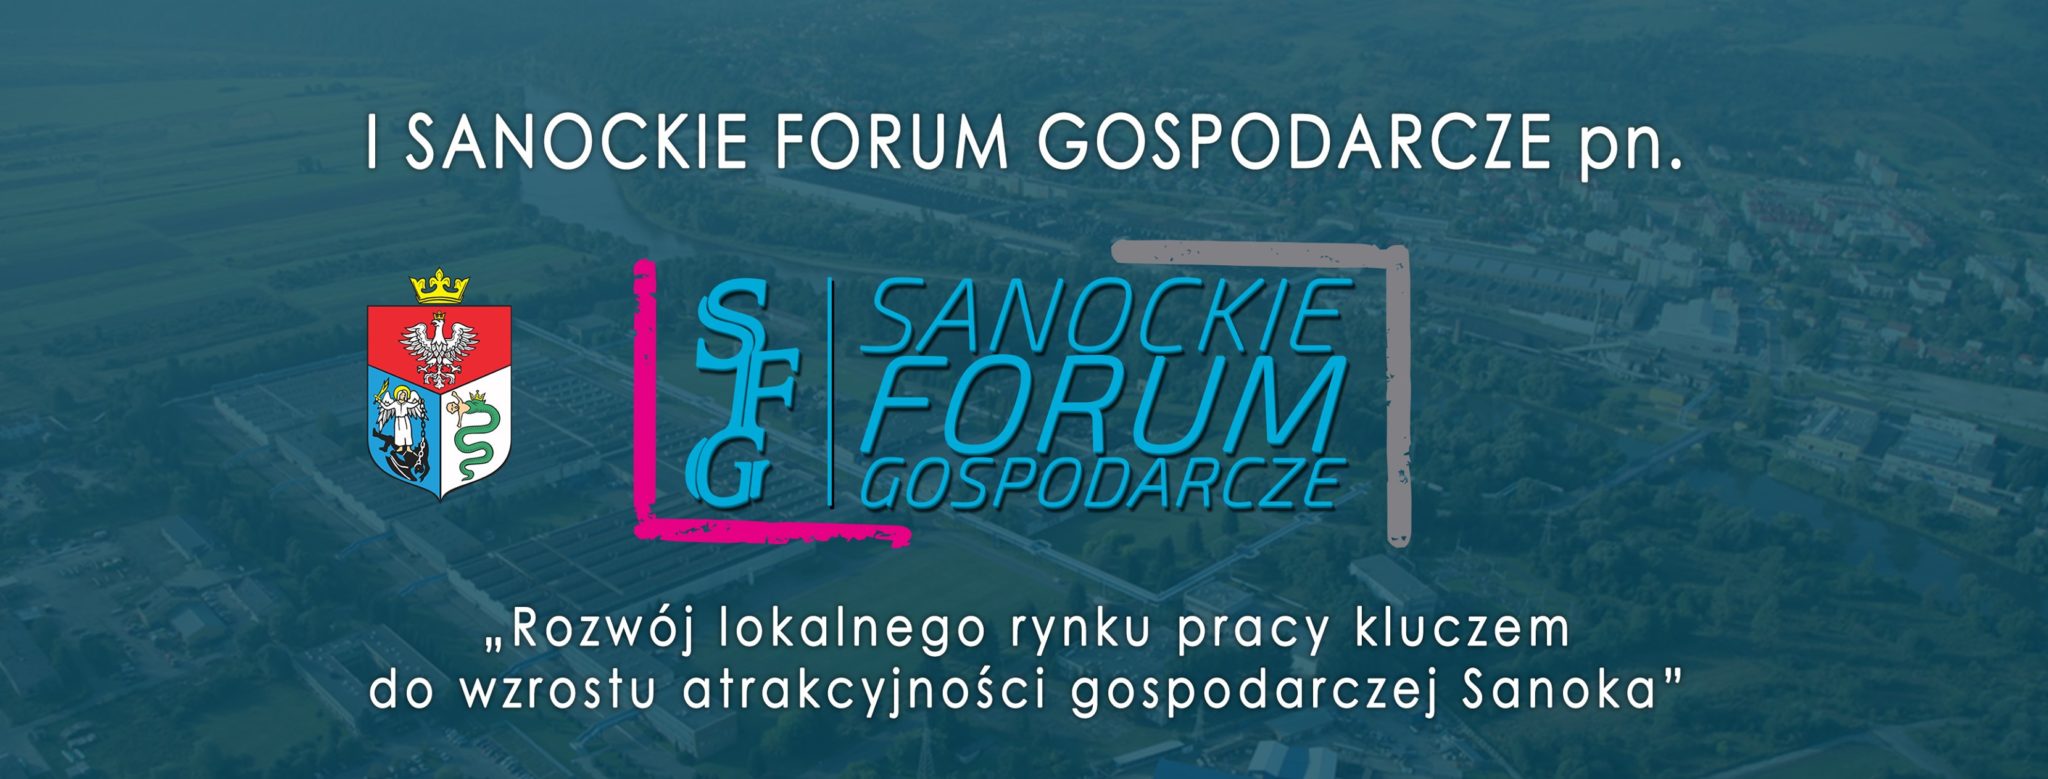 Już w najbliższy czwartek odbędzie się I Sanockie Forum Gospodarcze